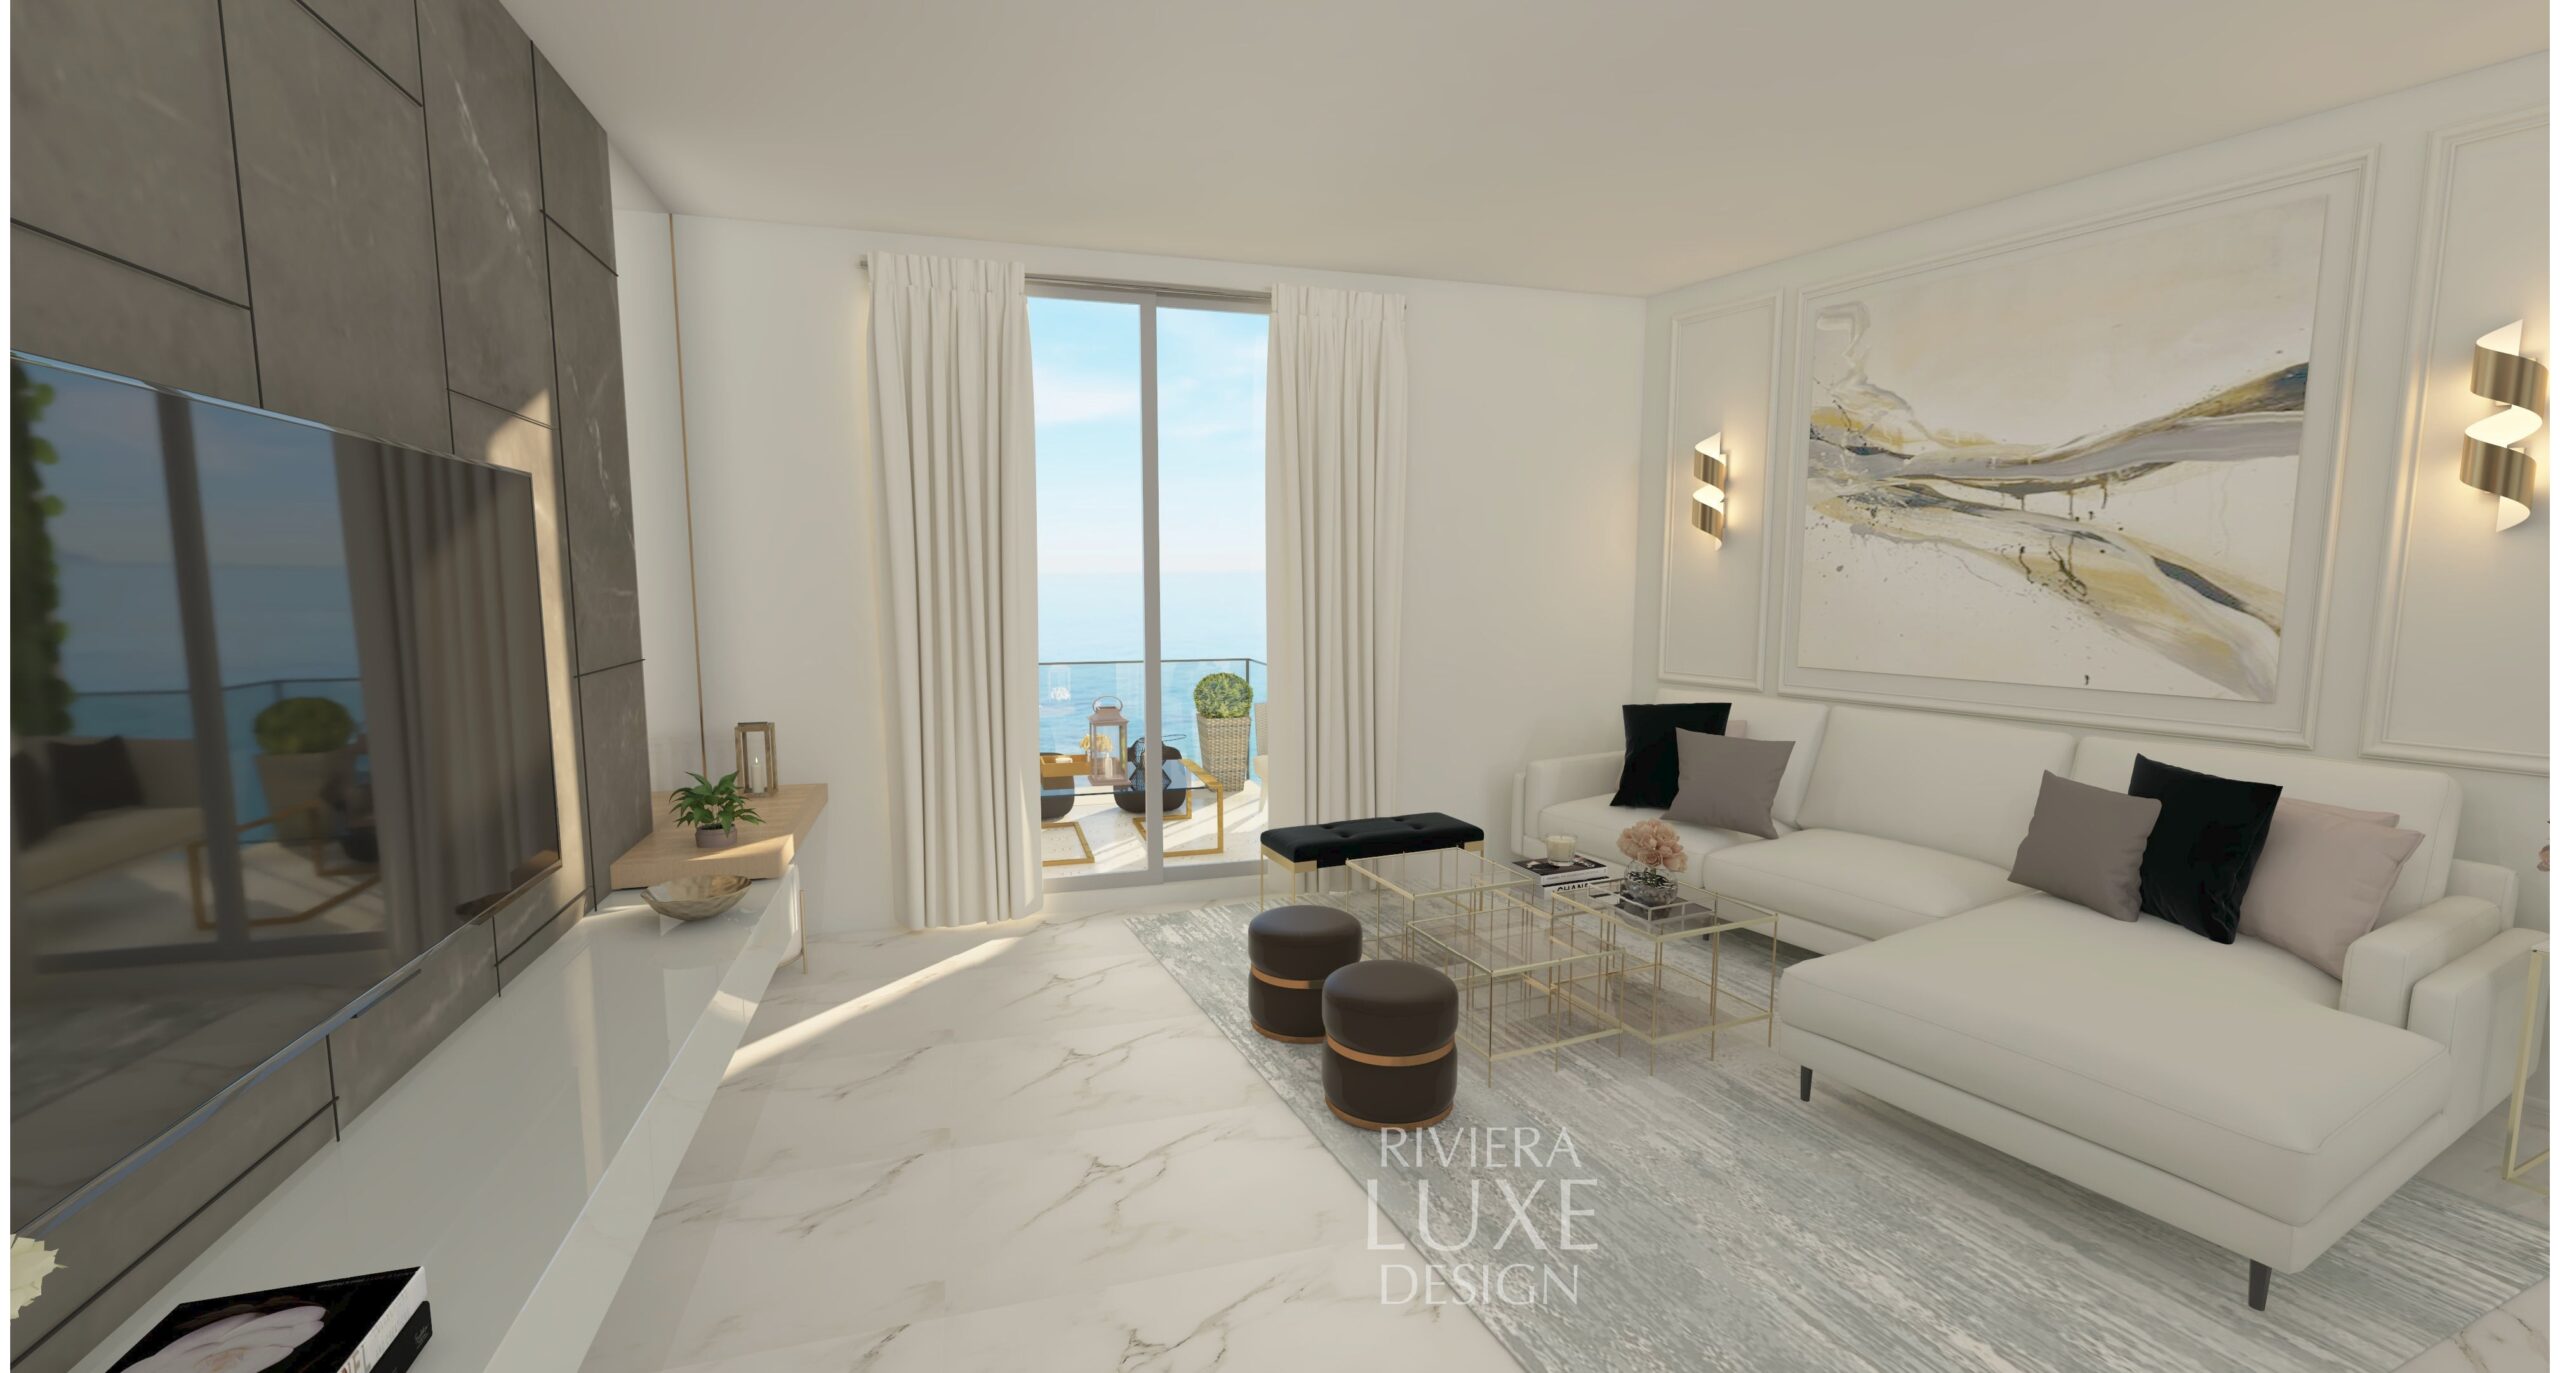 French Riviera 3D interior design